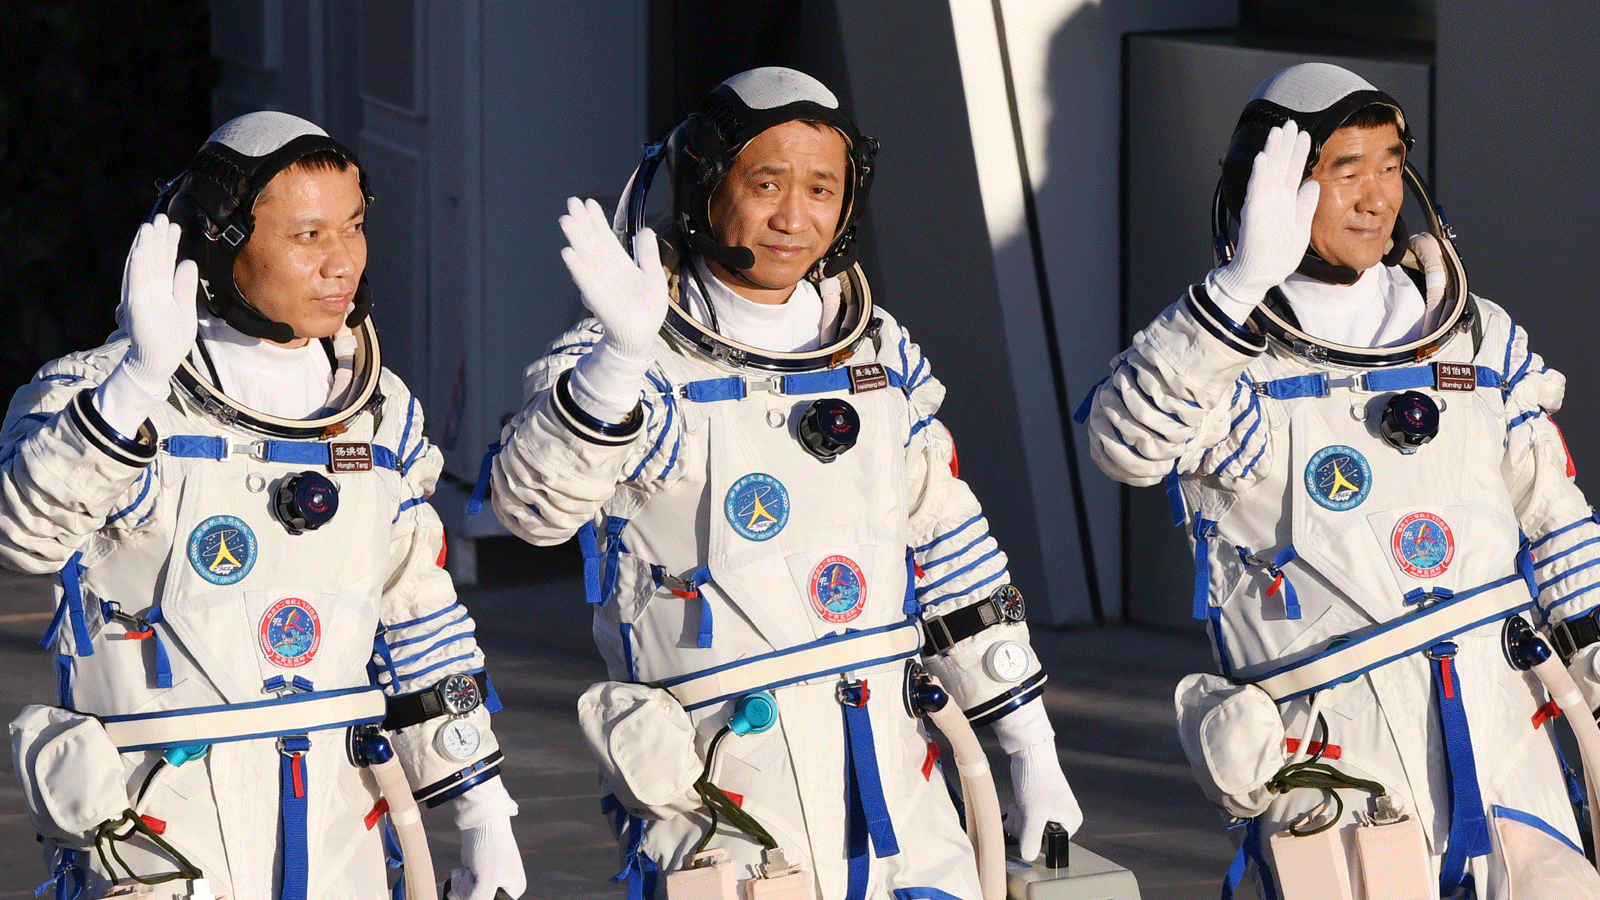 رواد الفضاء تانغ هونغبو، إلى اليسار، وني هاي شنغ، في الوسط، وموجة ليو بومينغ خلال حفل المغادرة قبل ركوب المركبة الفضائية شنتشو -12 على متن صاروخ حامل من طراز لونج مارش -2F في مركز جيوتشيوان لإطلاق الأقمار الصناعية في صحراء جوبي في شمال غرب الصين